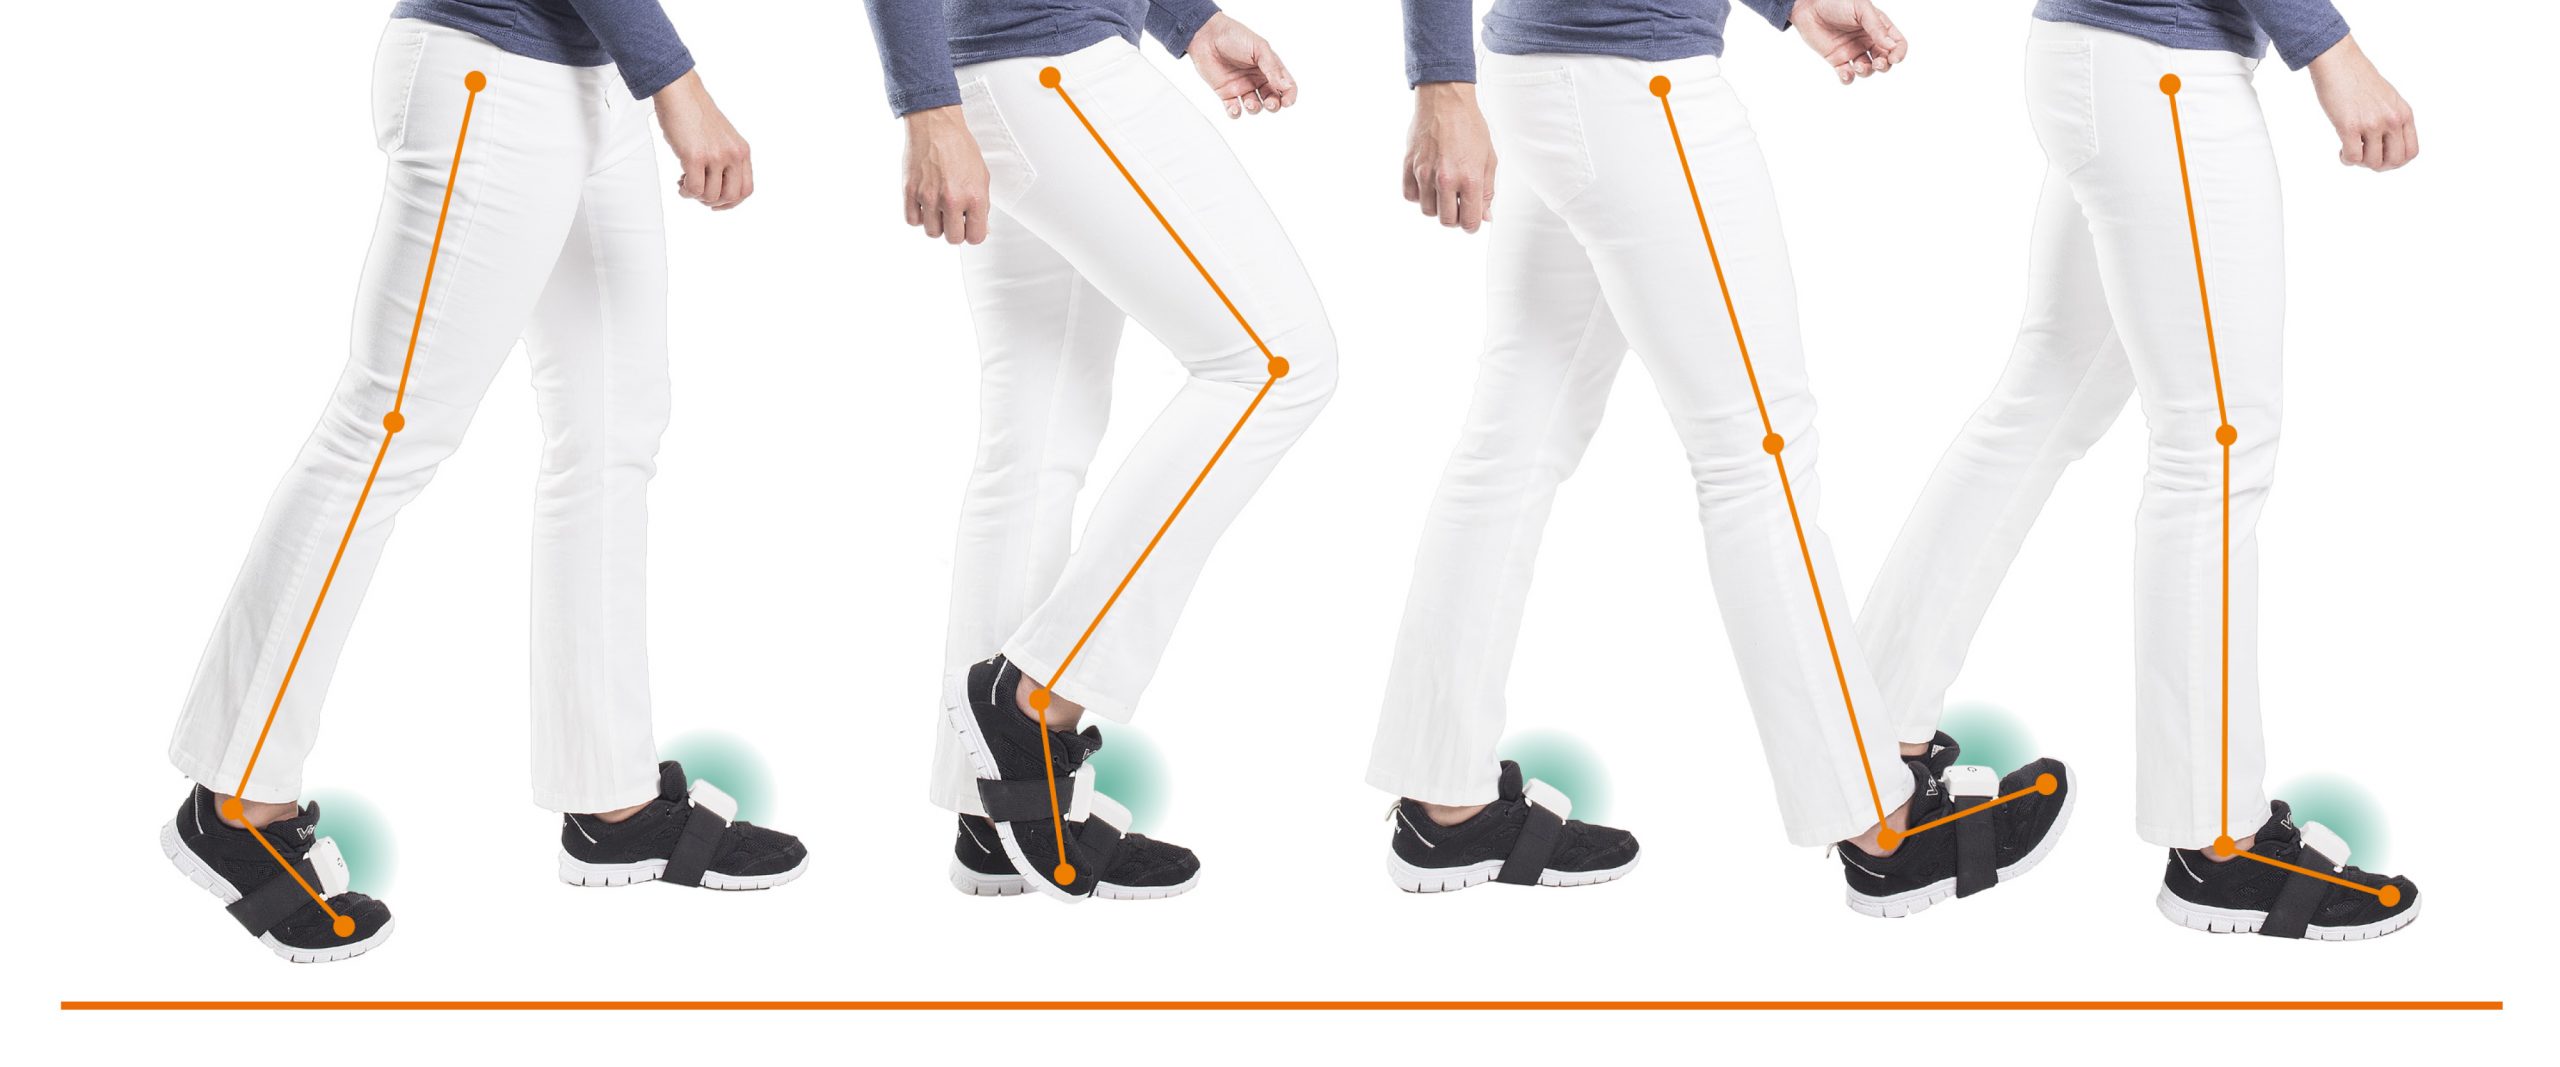 PABLO sensors Anwendungsbeispiel an den Beinen, Ganganalyse